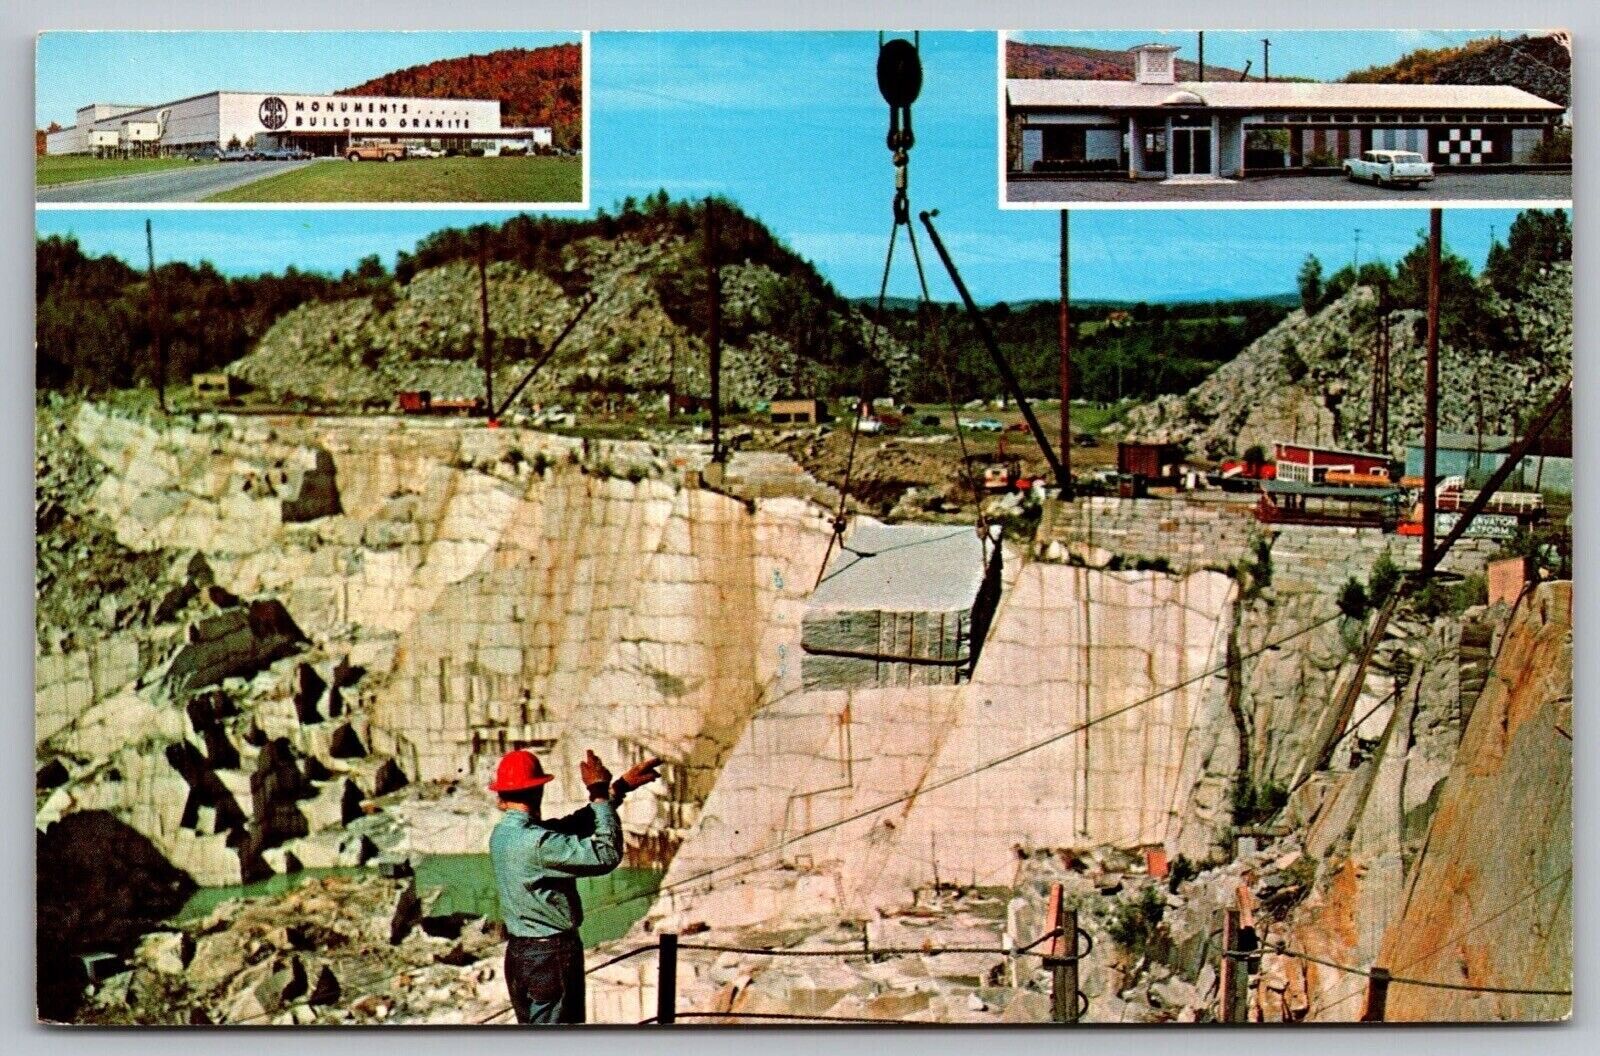 Barre Vermont Rock Of Ages Granite Quarry Attraction Chrome UNP Postcard